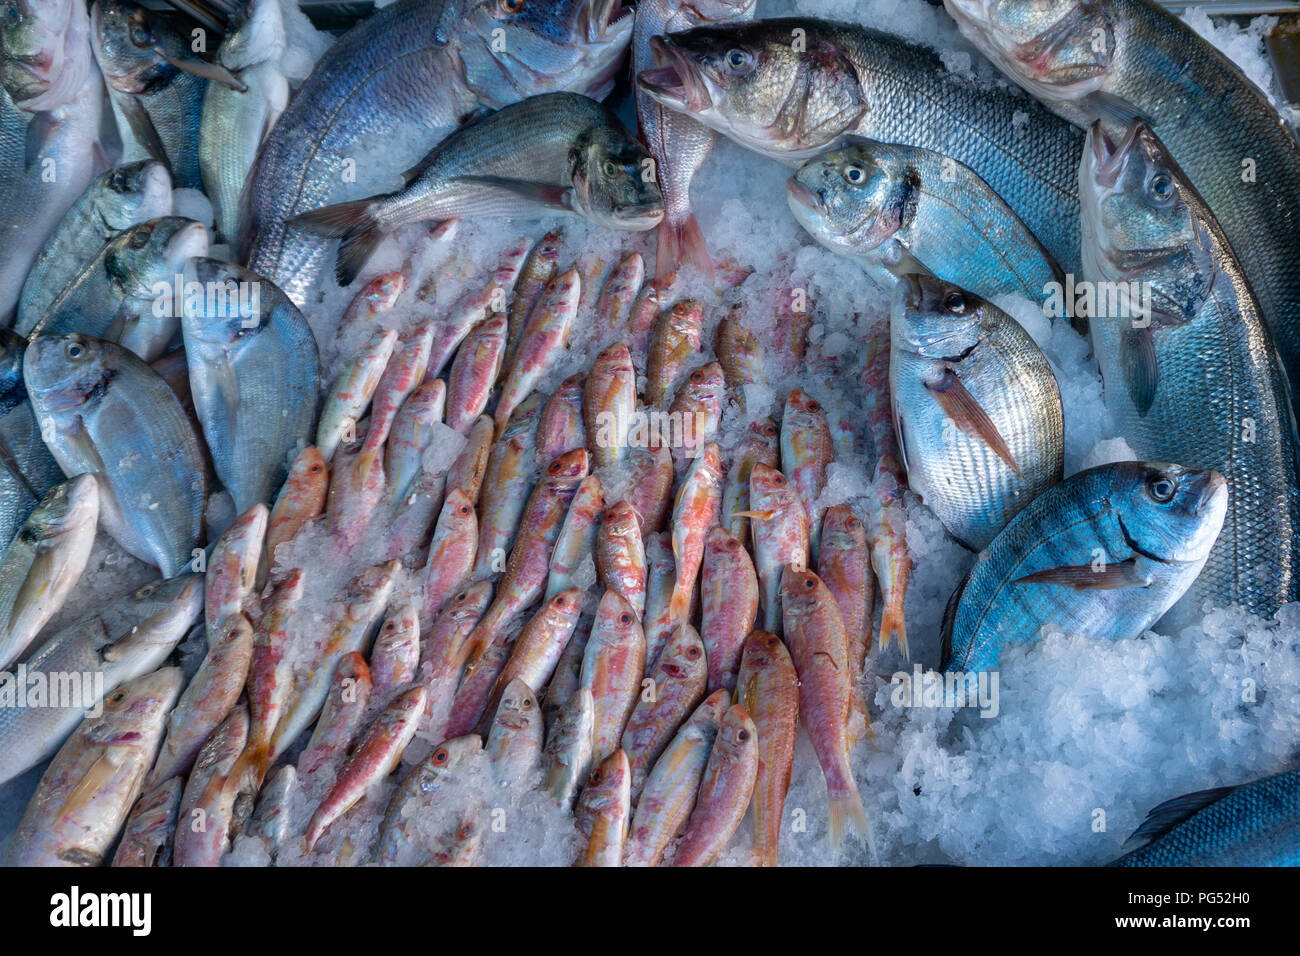 Pesce fresco sul mercato stallo che si trova nel villaggio mediterraneo della Turchia. Foto Stock